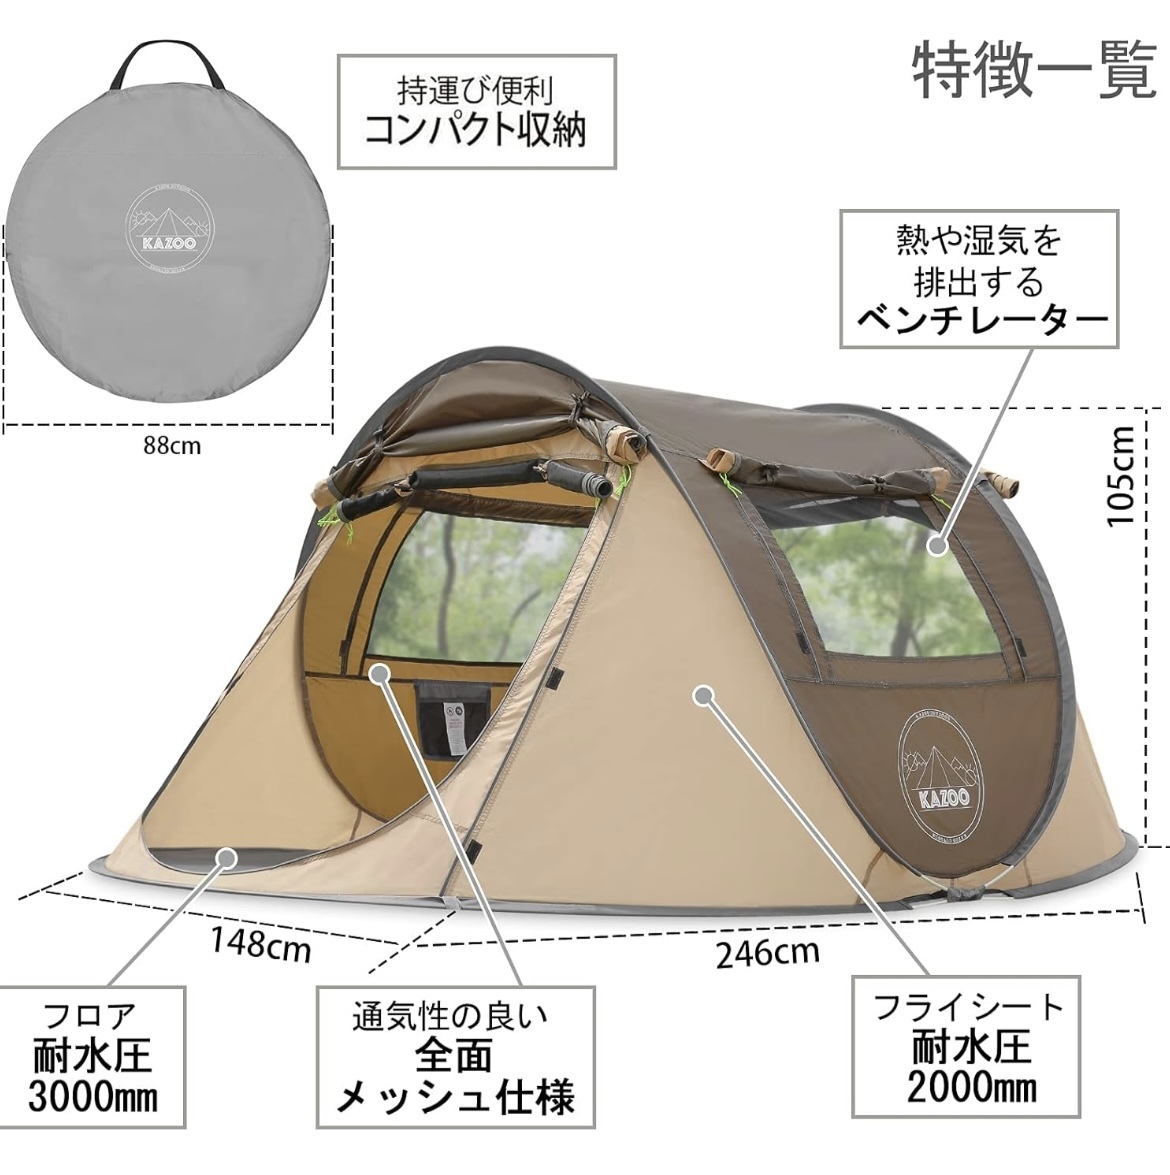 キャンプ用自動屋外ポップアップテント防水用クイックオープニングテントキャリングバッグ付き4人用キャノピー_画像2